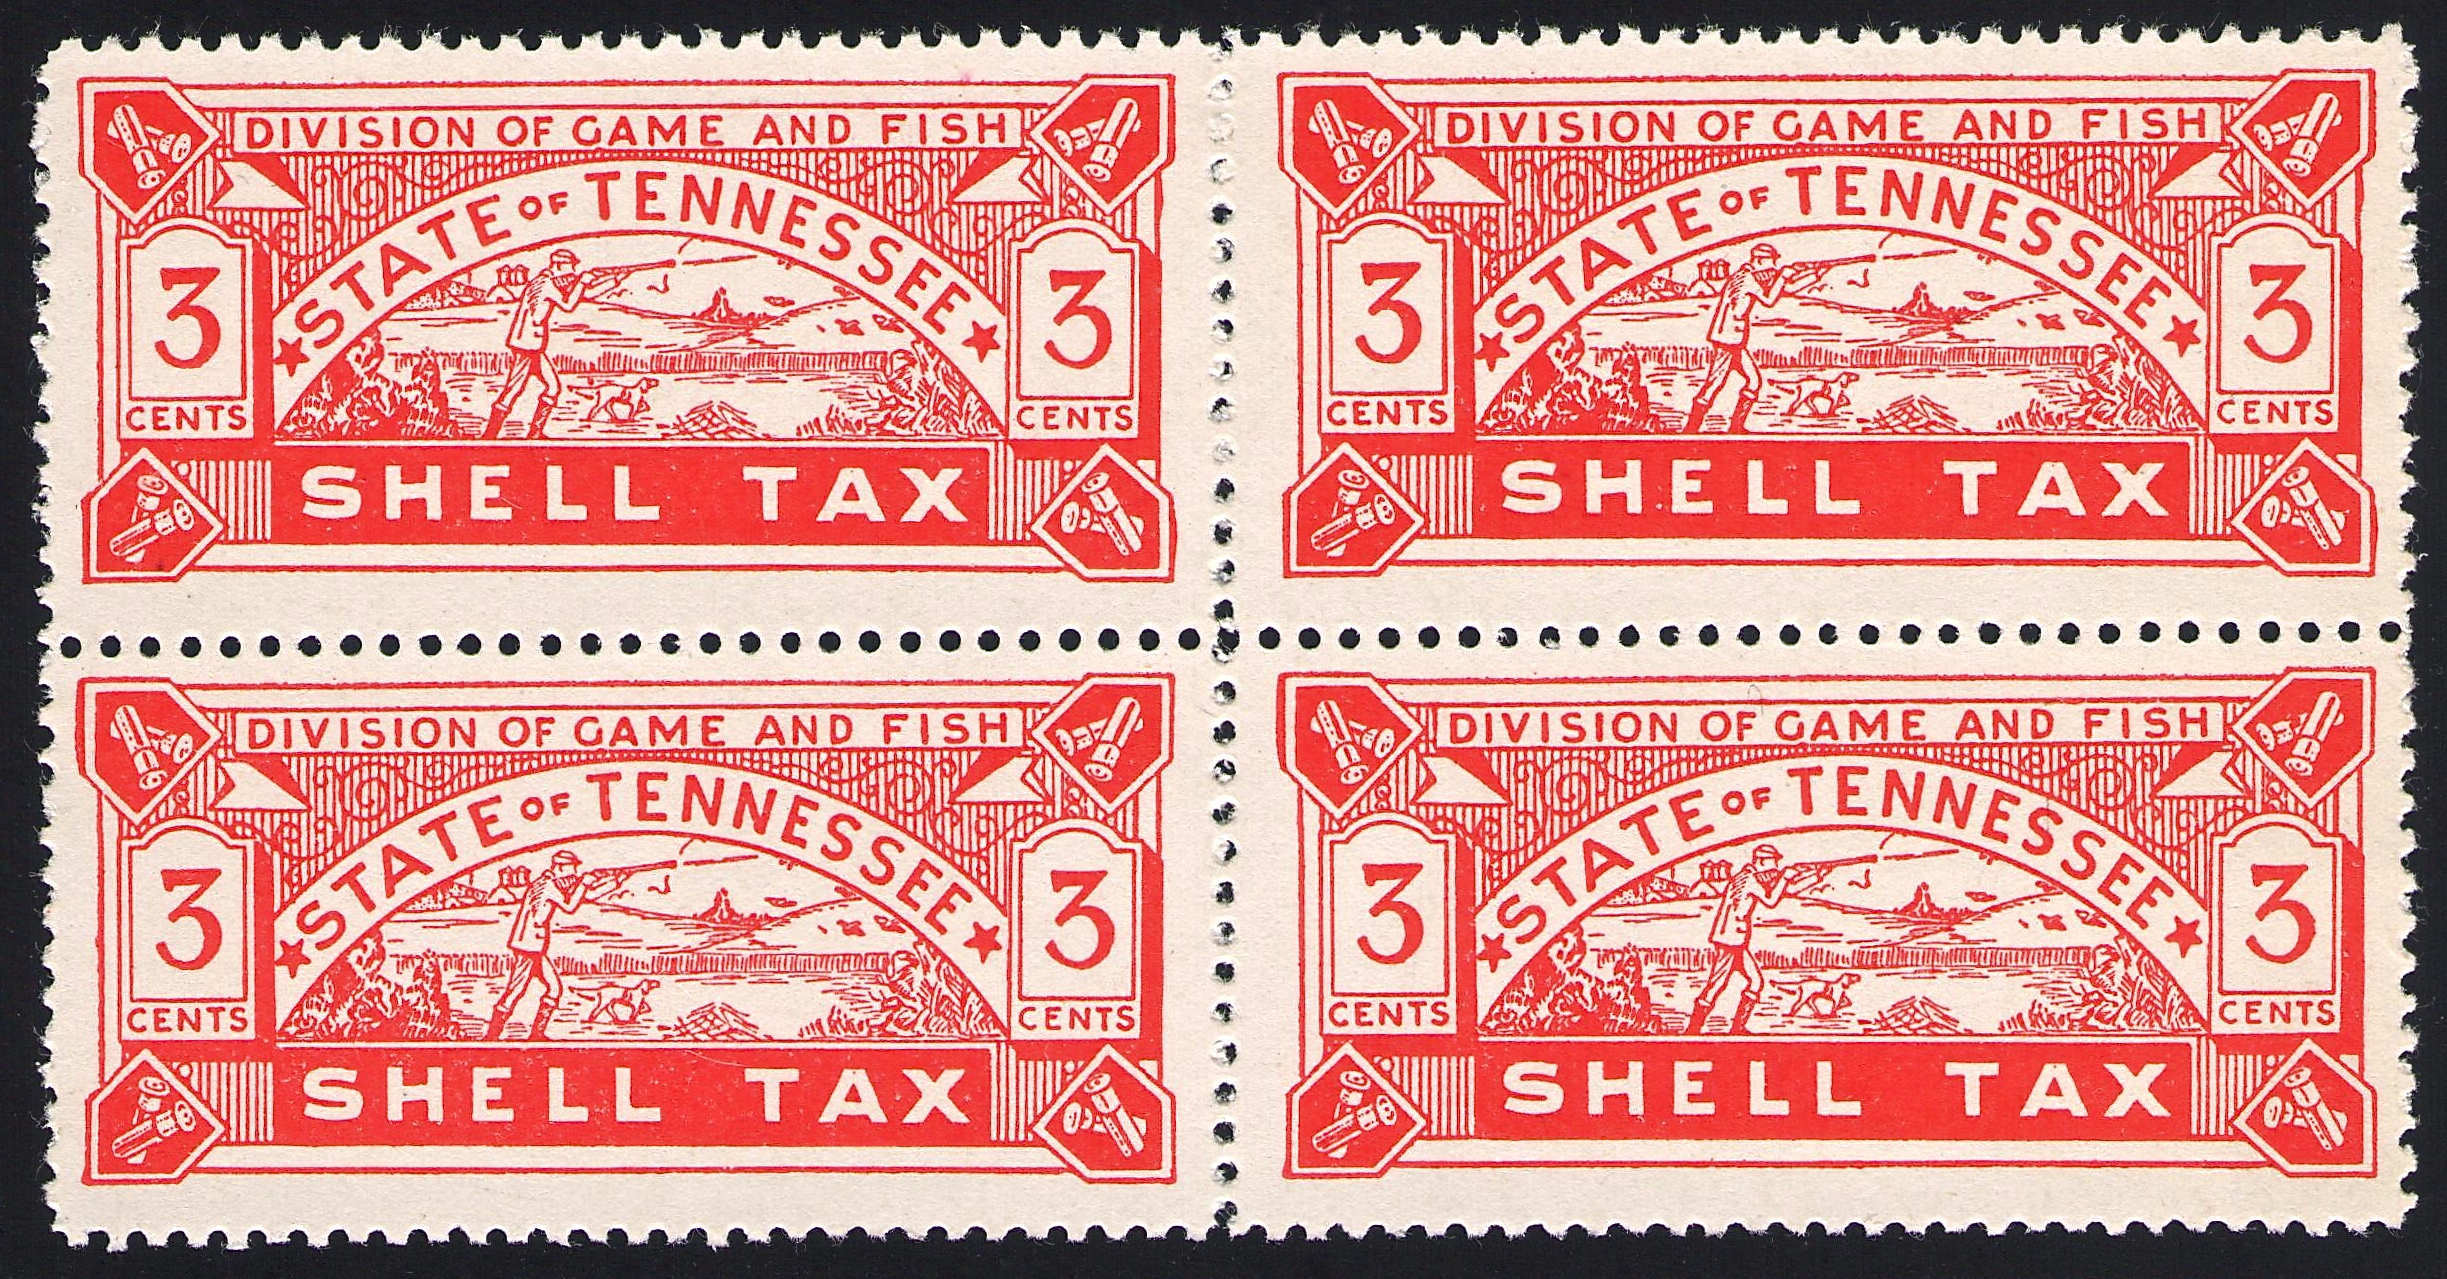 1938 3 Cents Tennessee Shell Tax Block - ex Joyce